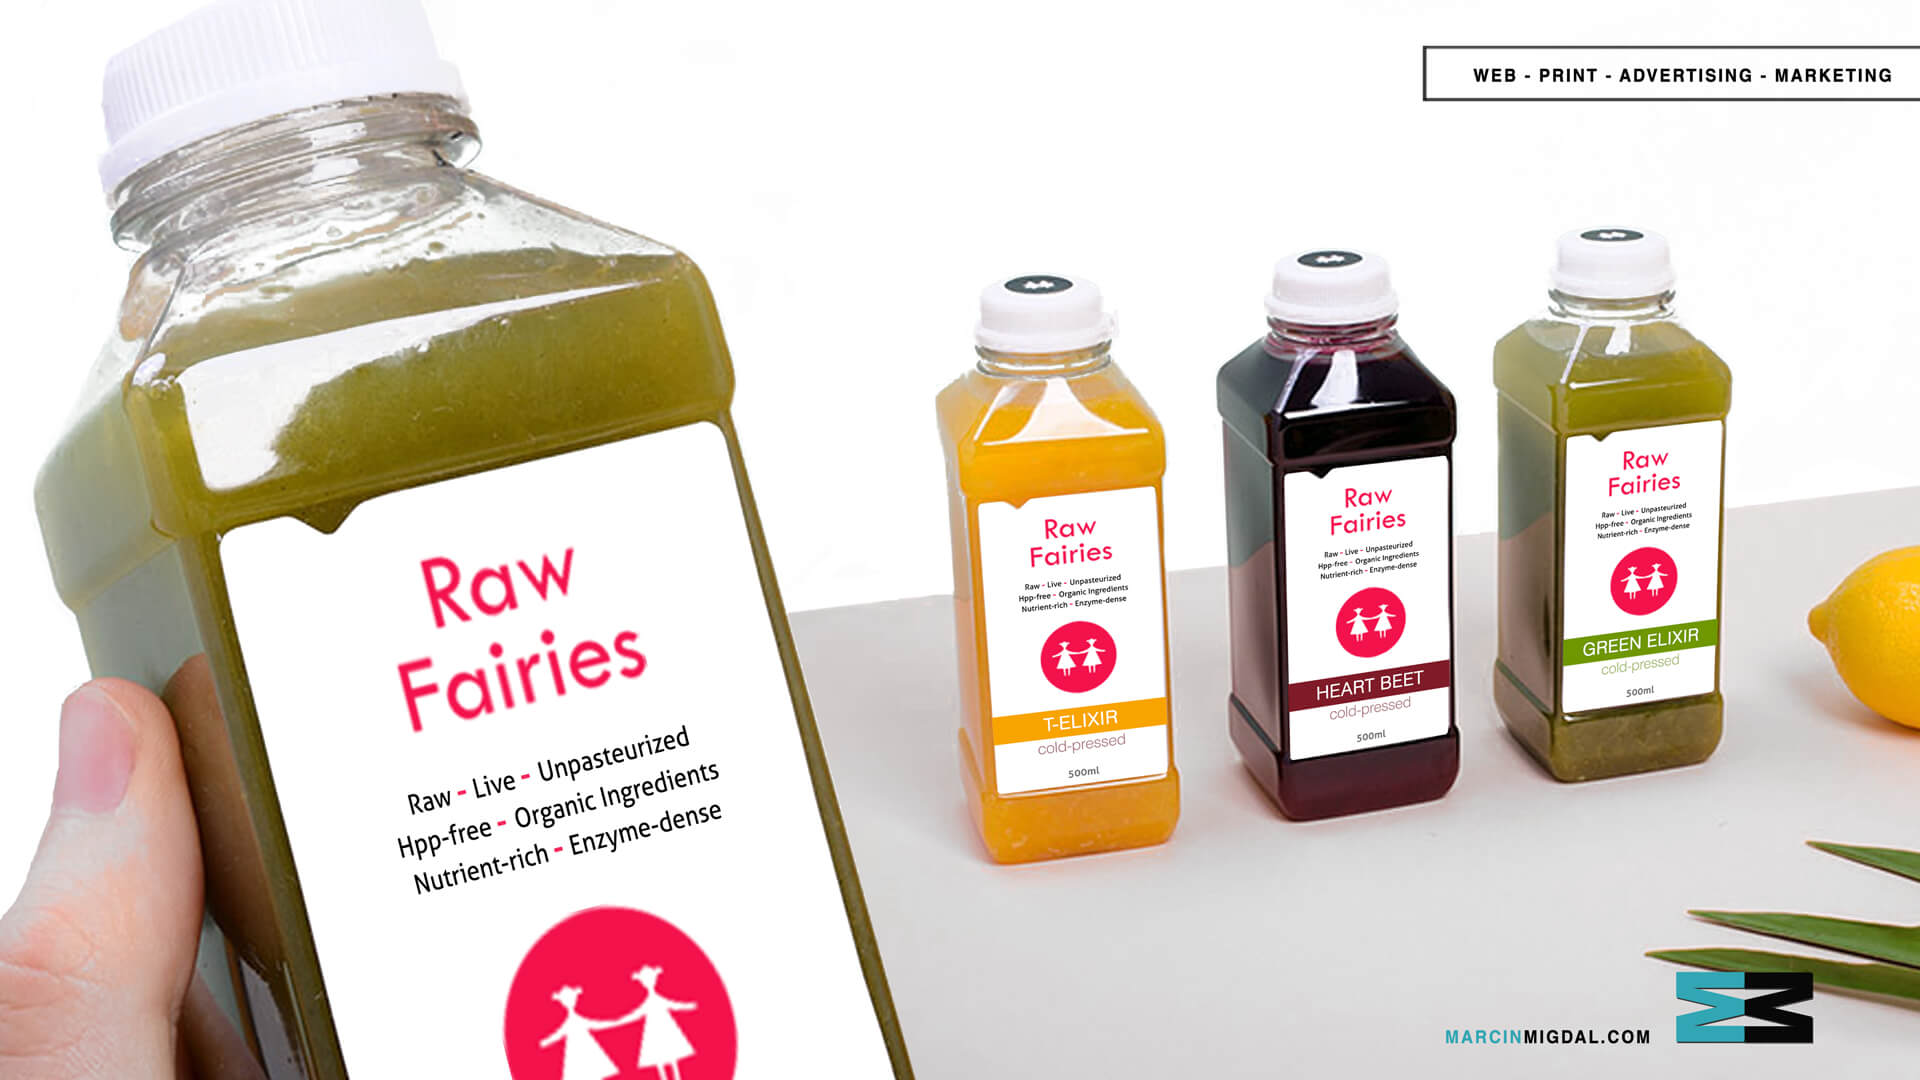  Raw Fairies - Beverage Packaging Design by Marcin Migdal 